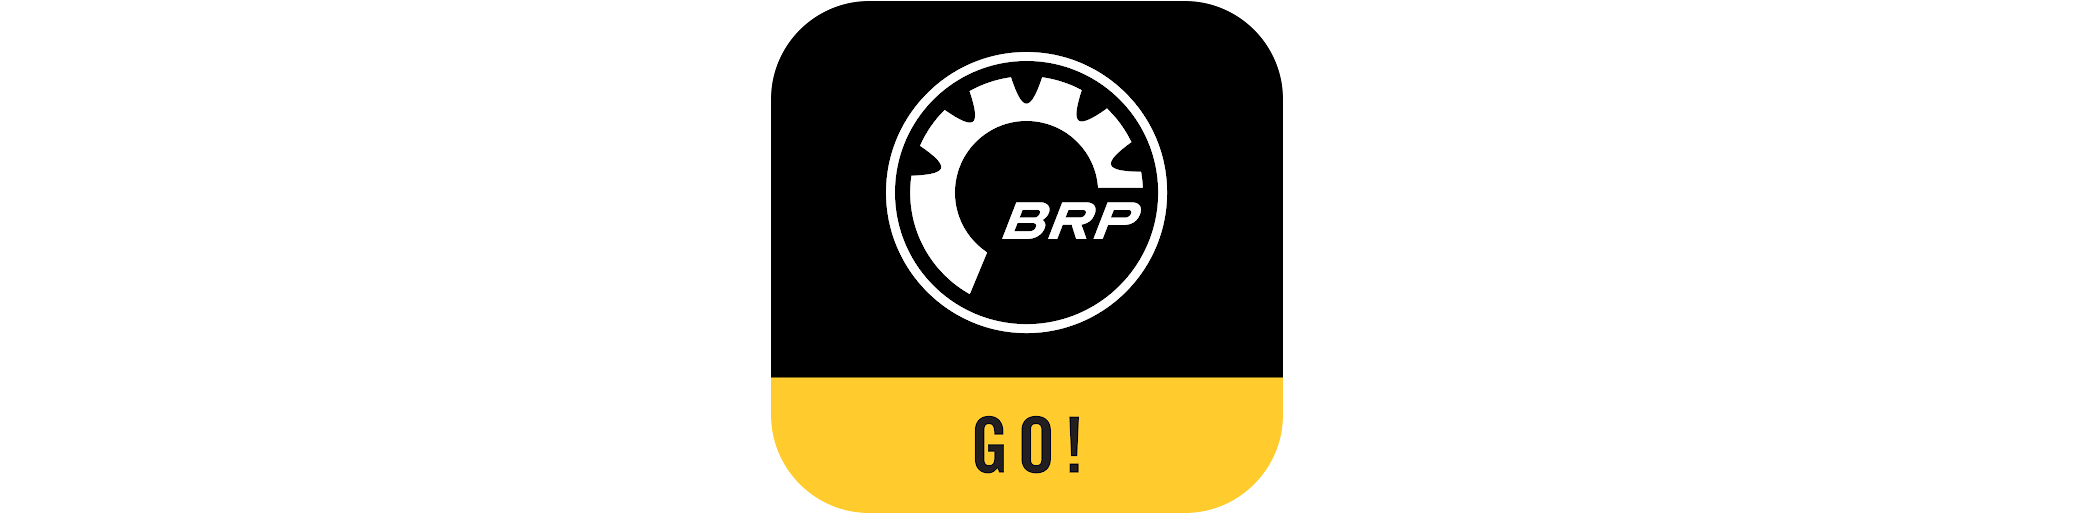 BRP GO uygulaması logosu